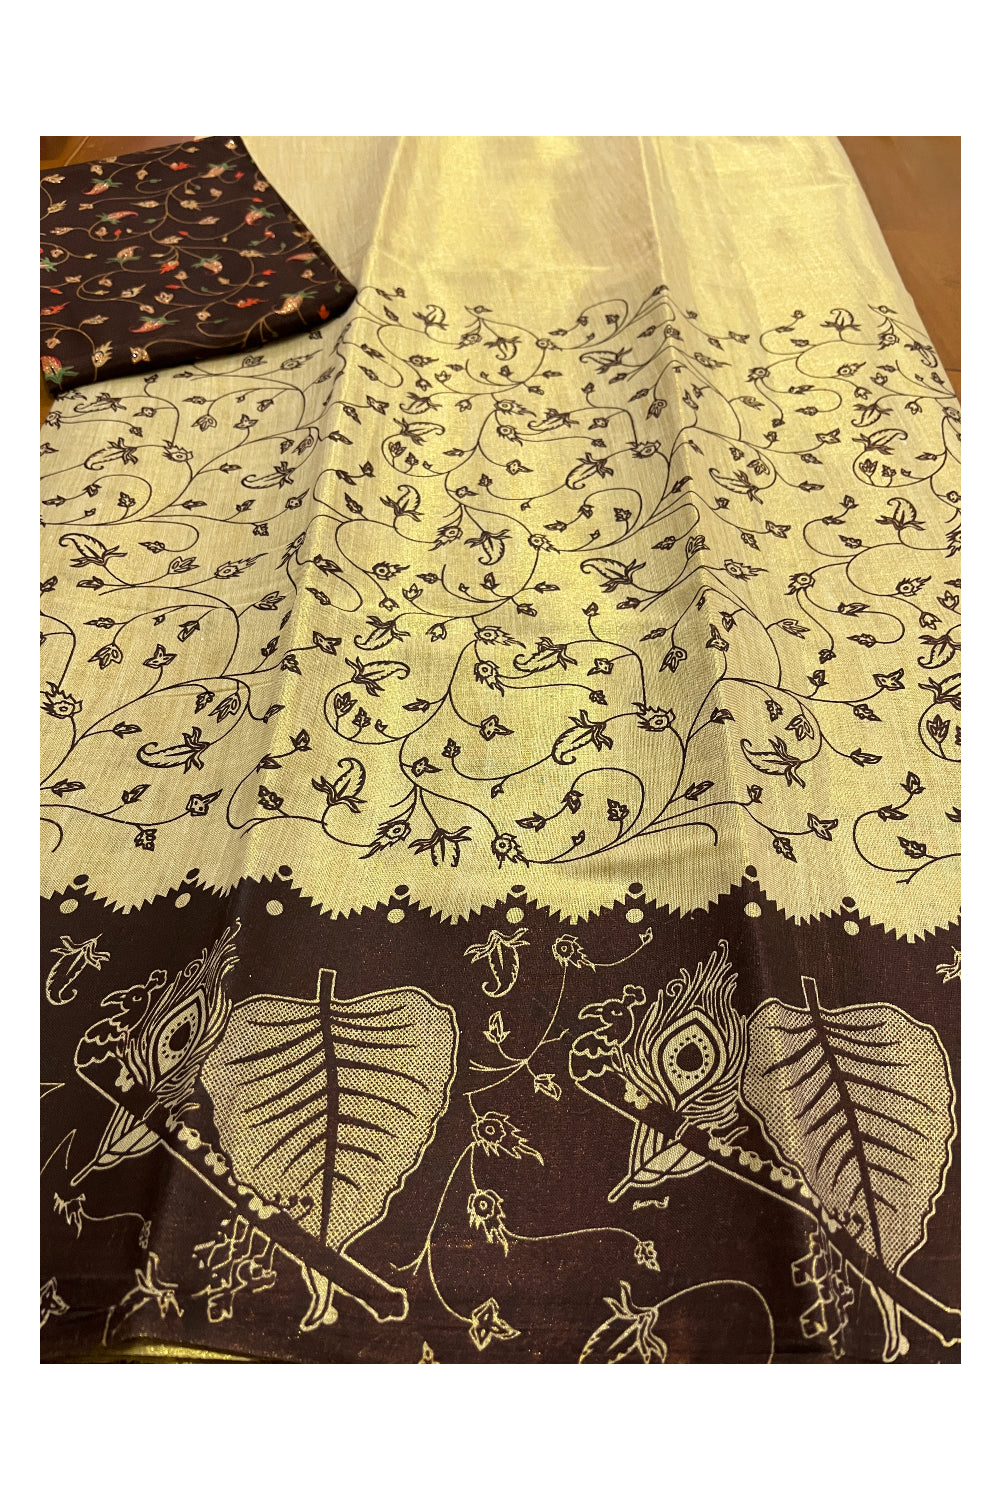 Kerala Tissue Block Printed Pavada and Brown Designer Blouse Material for Kids/Girls 4.3 Meters